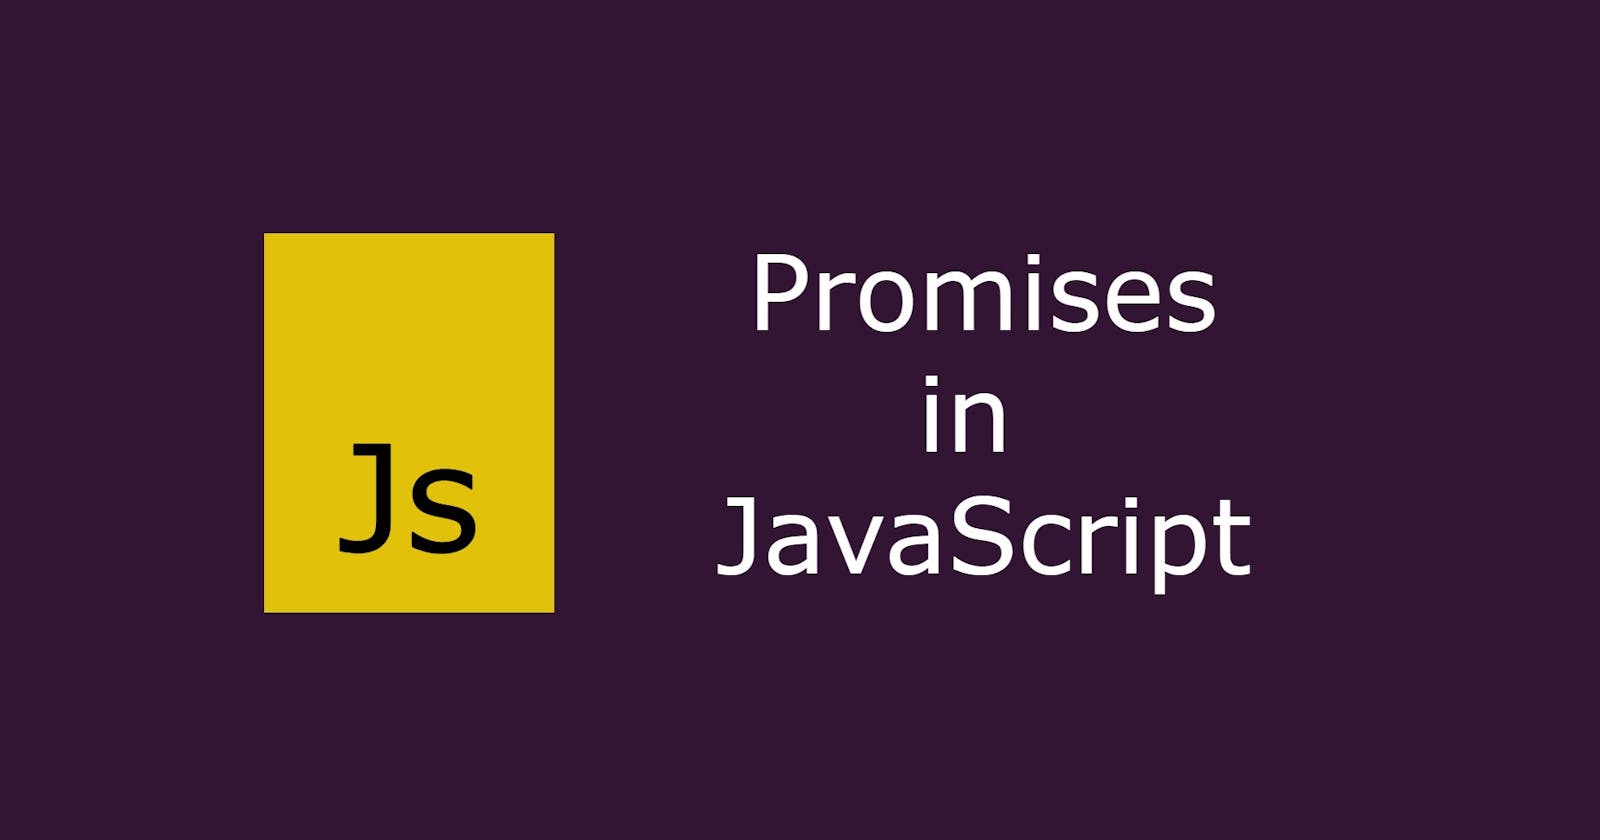 Promises in JavaScript